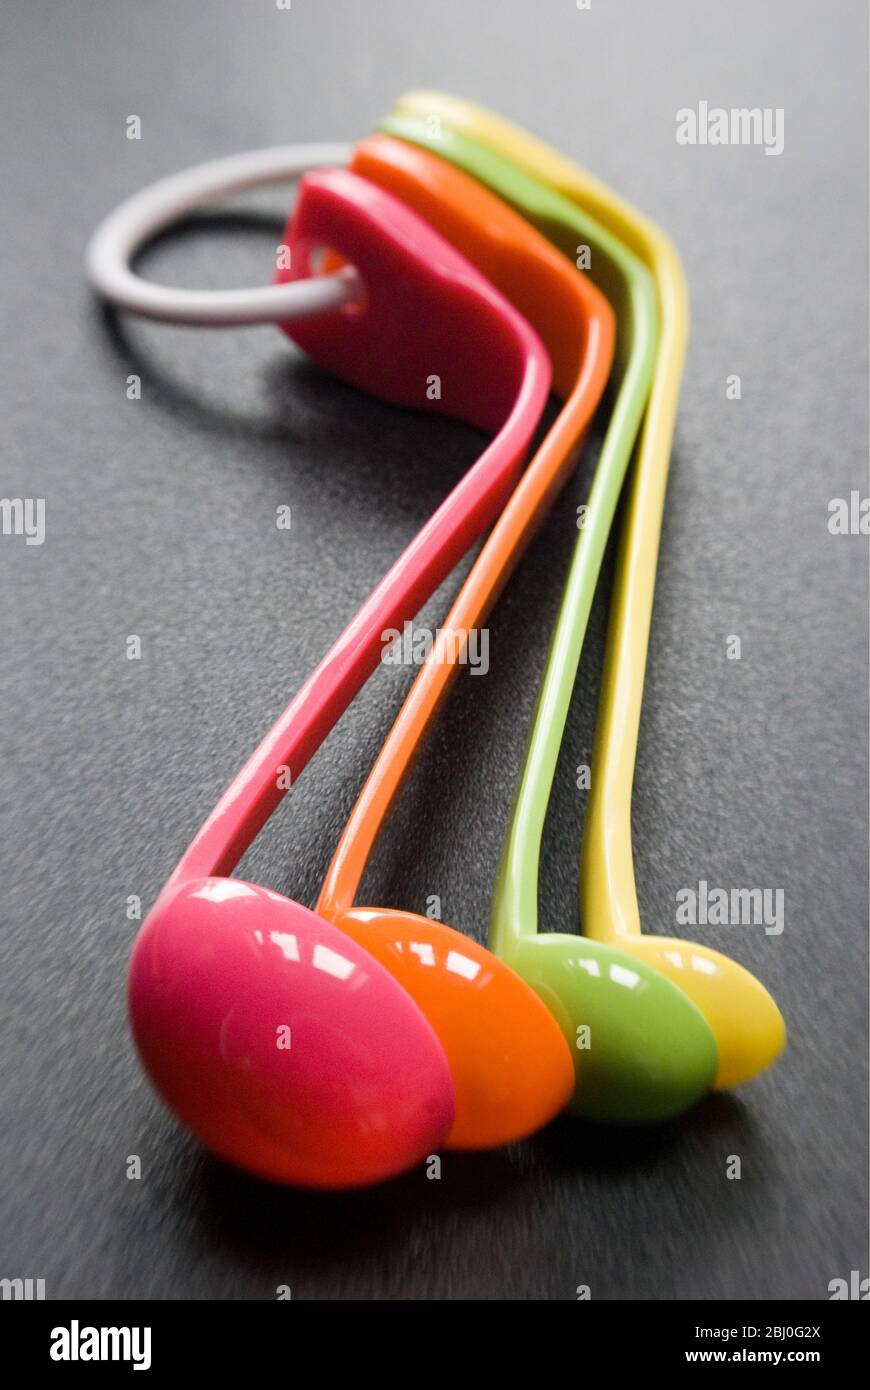 Juego de cucharas de medición de plástico de melamina de colores brillantes - Foto de stock